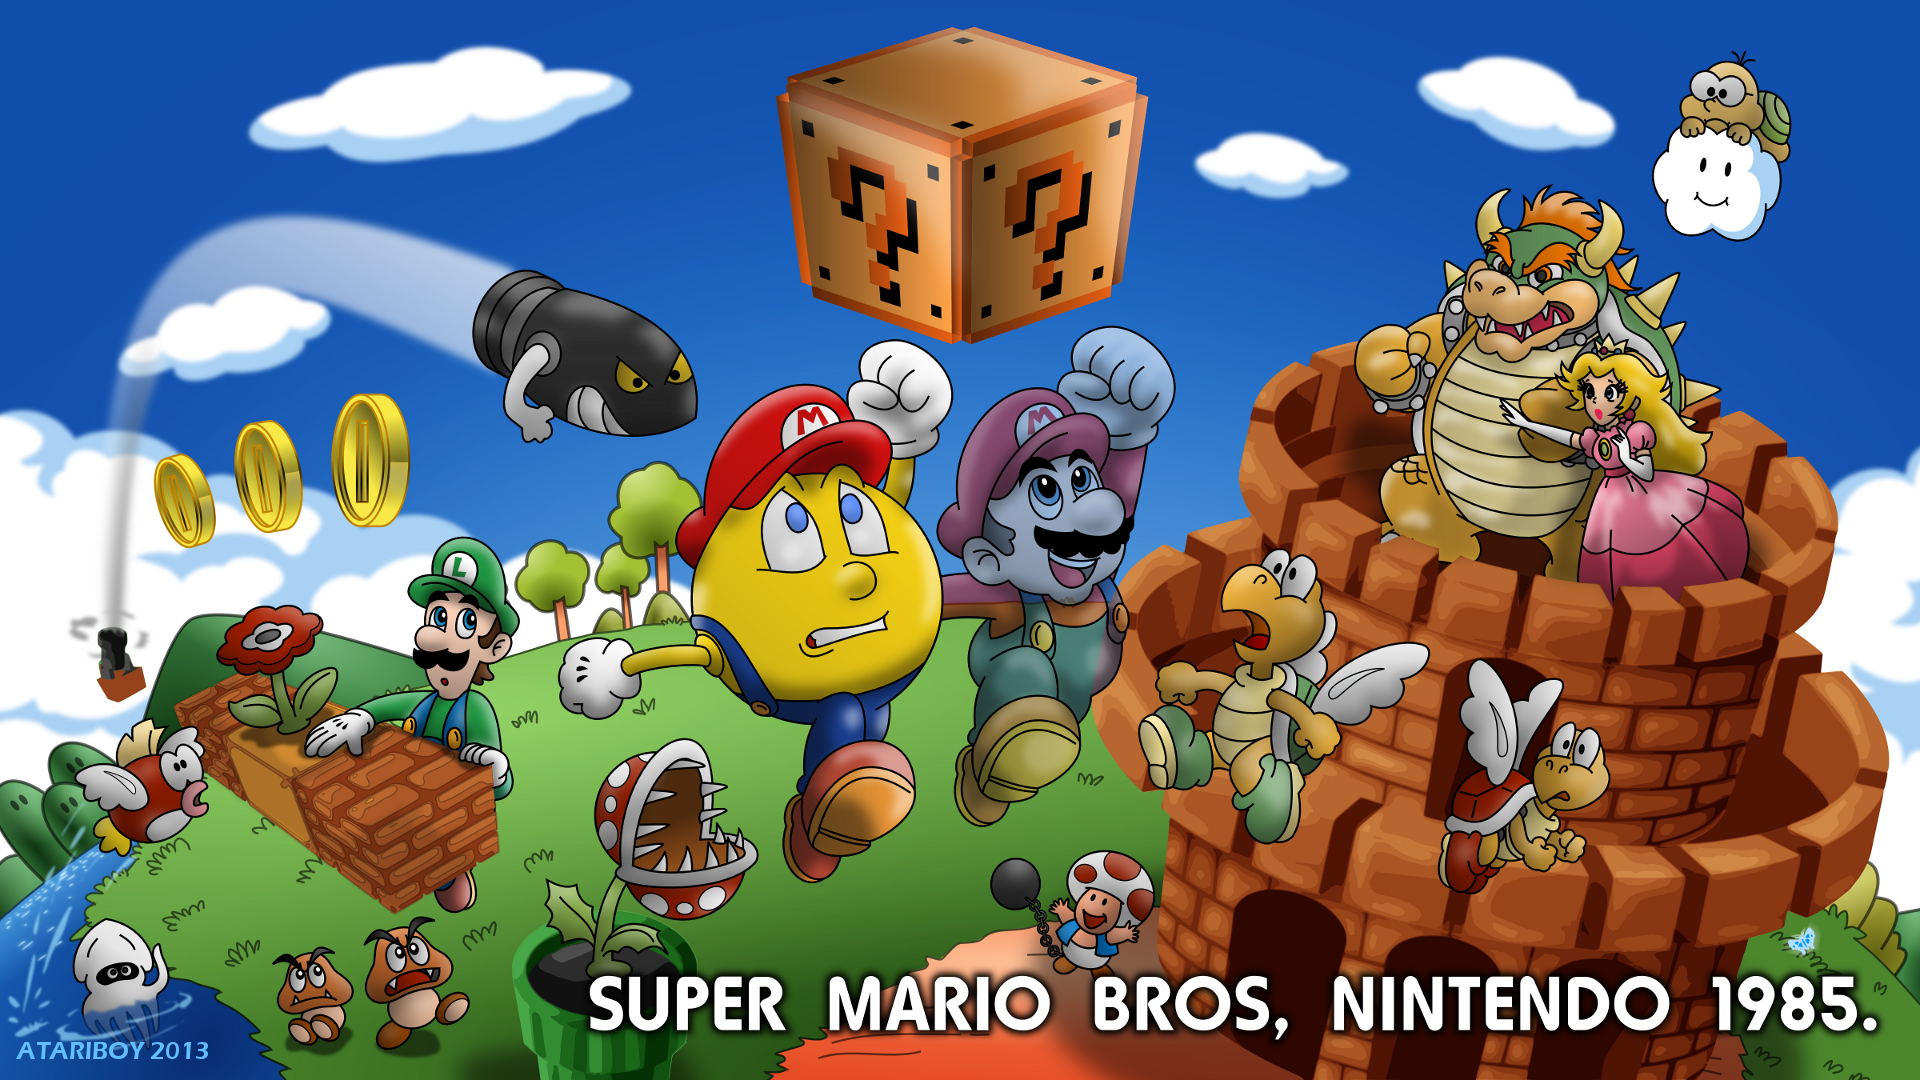 Super Mario Bros Video Game 1985 - IMDb